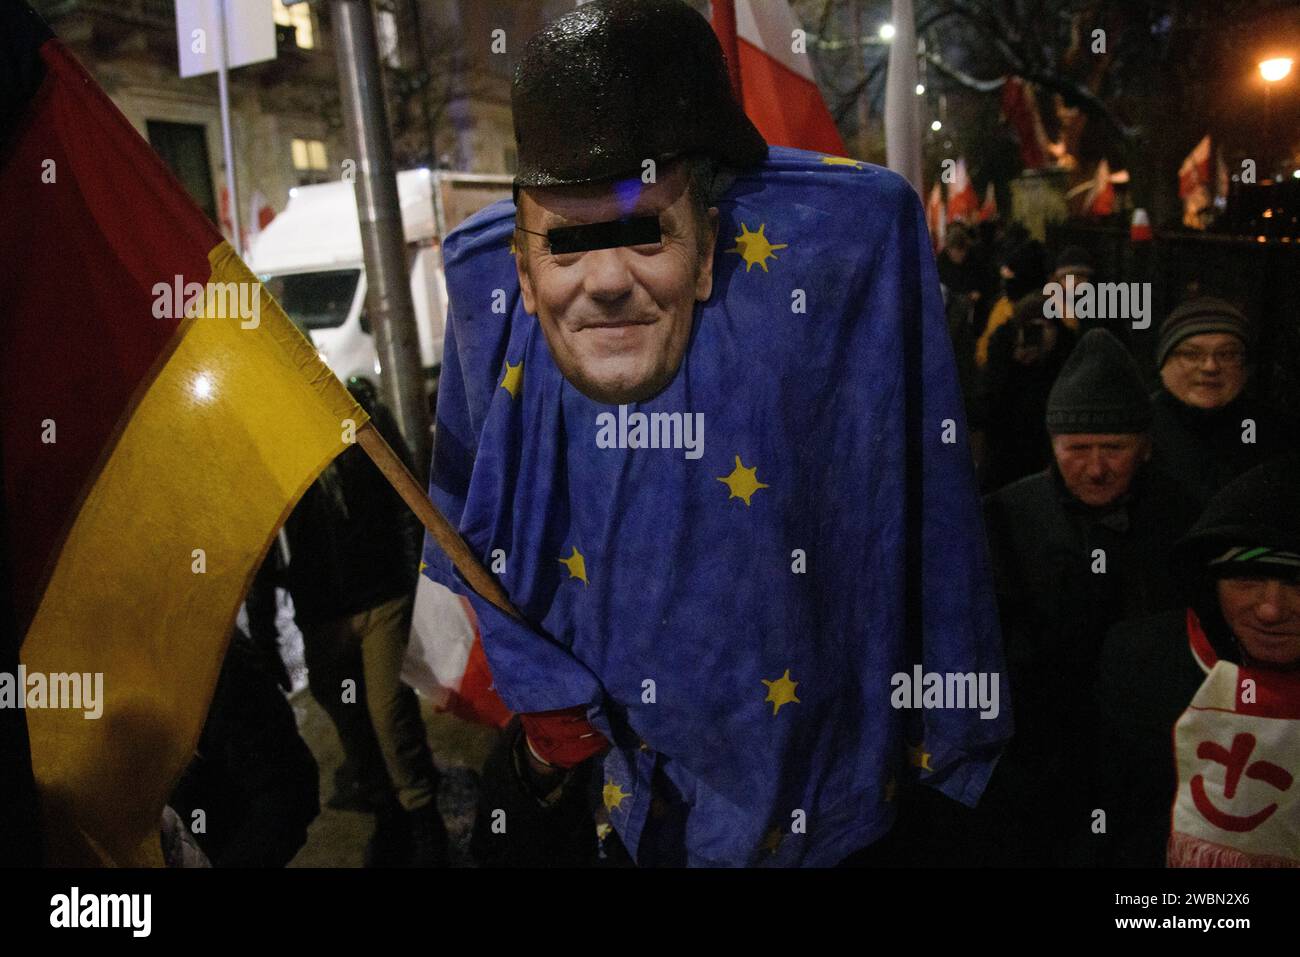 Anti-Regierungs-Protest In Warschau. Ein Demonstrant trägt ein Modell des polnischen Ministerpräsidenten Donald Tusk, der einen deutschen Helm aus dem Zweiten Weltkrieg trägt, in eine Flagge der Europäischen Union gehüllt ist und eine deutsche Flagge hält, während er am 11. Januar 2024 an einer Anti-Regierungs-Kundgebung in Warschau teilnimmt. Tausende von Menschen versammelten sich vor dem polnischen parlament des Sejm, um gegen die proeuropäische Koalition unter der Führung von Donald Tusk zu protestieren, die die Freilassung der Abgeordneten Mariusz Kaminski und Maciej Wasik der Partei Recht und Gerechtigkeit der PiS forderte, sowie die Rückkehr der staatlichen Medien unter dem Einfluss der PiS. Warschau Polen Copyright: XAleksanderxKalka Stockfoto